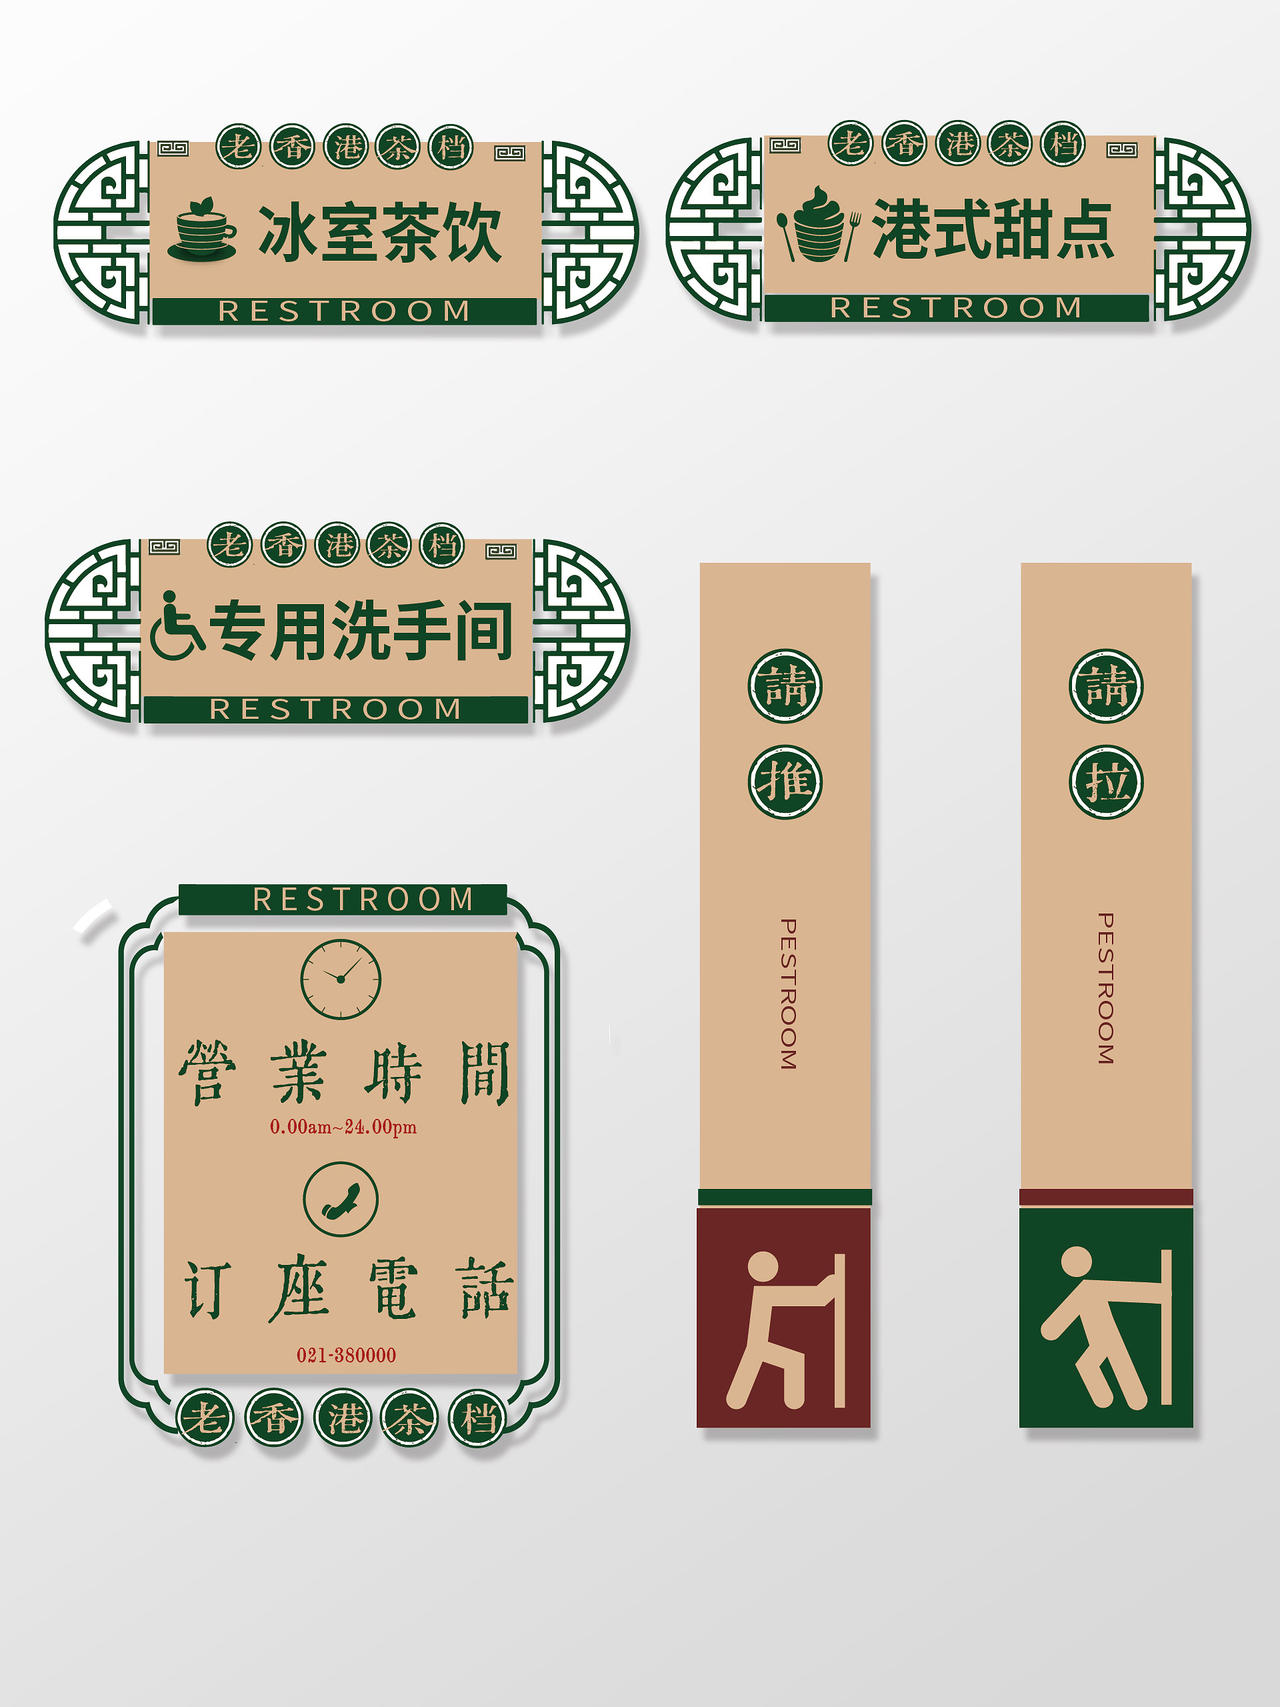 绿色港式风格老香港茶档餐厅标识餐厅标识牌